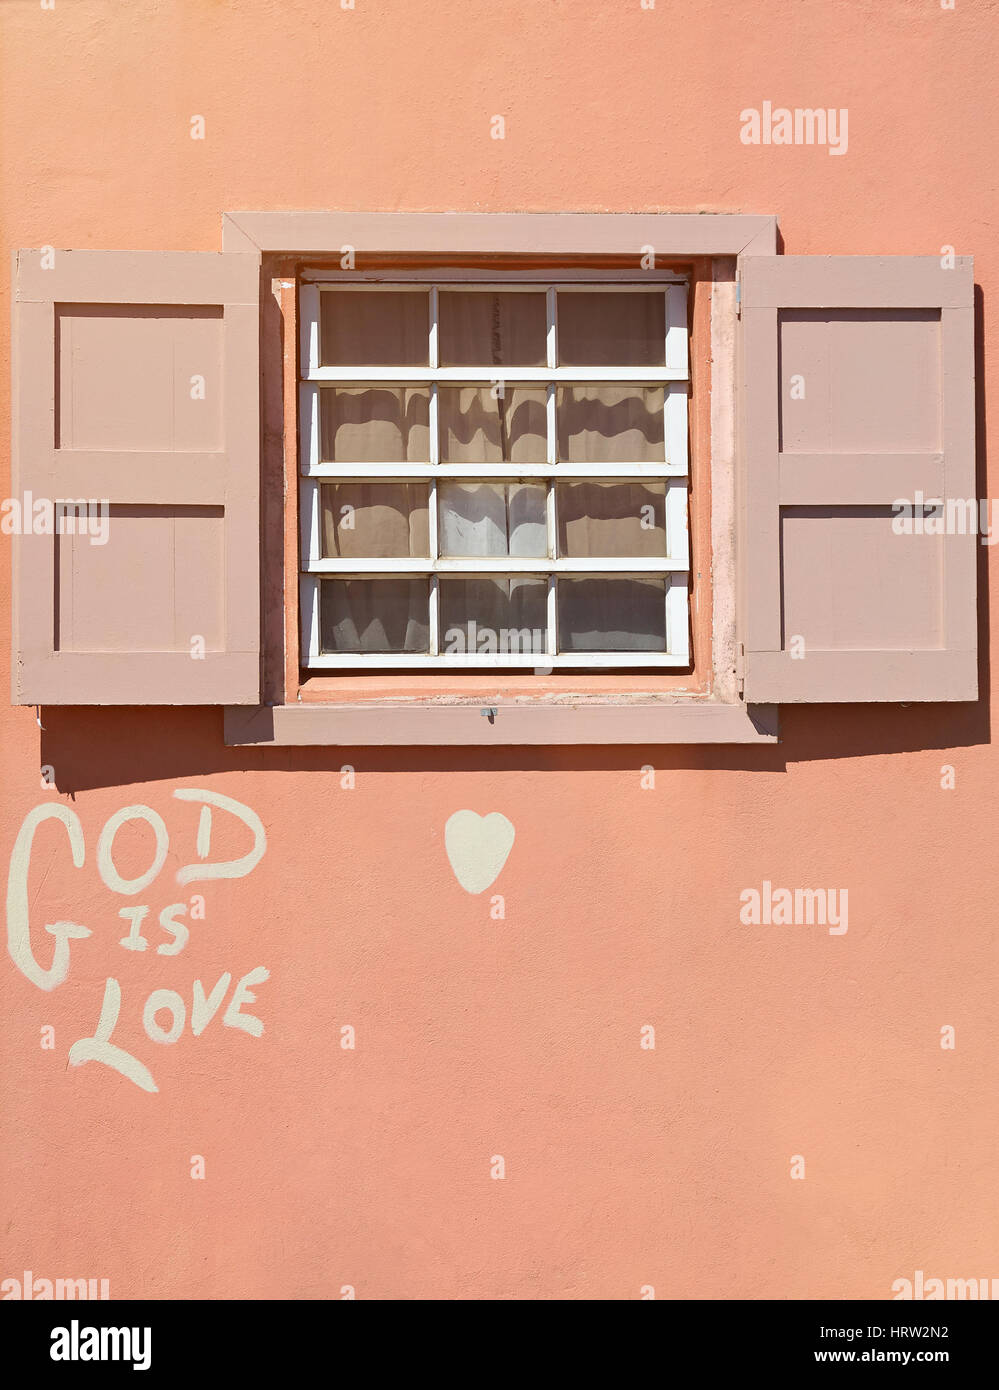 Holzfenster in rosa Hauswand mit Graffiti-Gott ist Liebe. Einfaches Holz Fenster Stockfoto